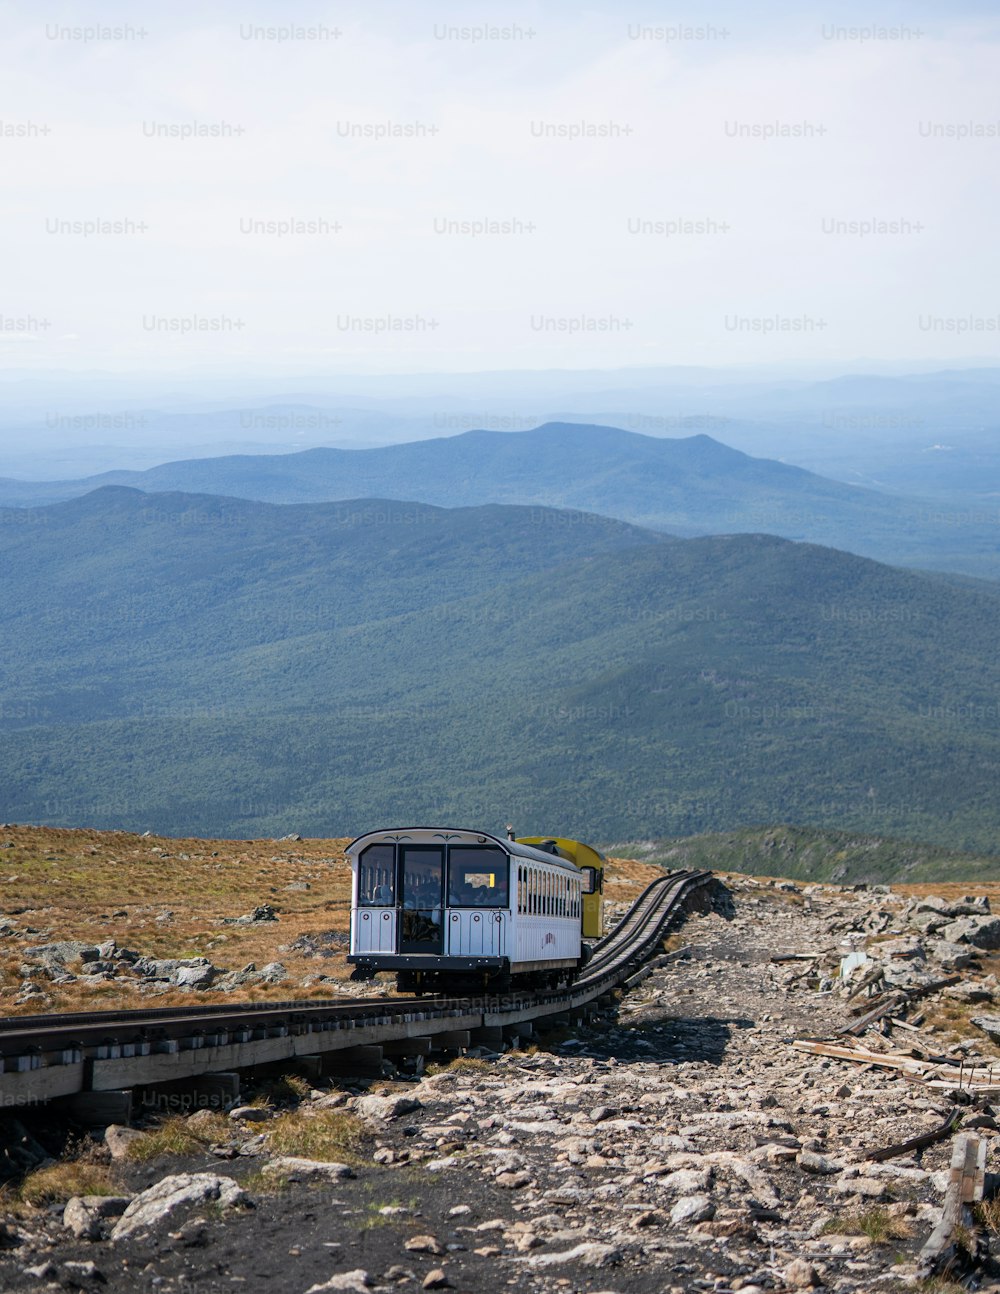 Un train sur une voie avec des montagnes en arrière-plan